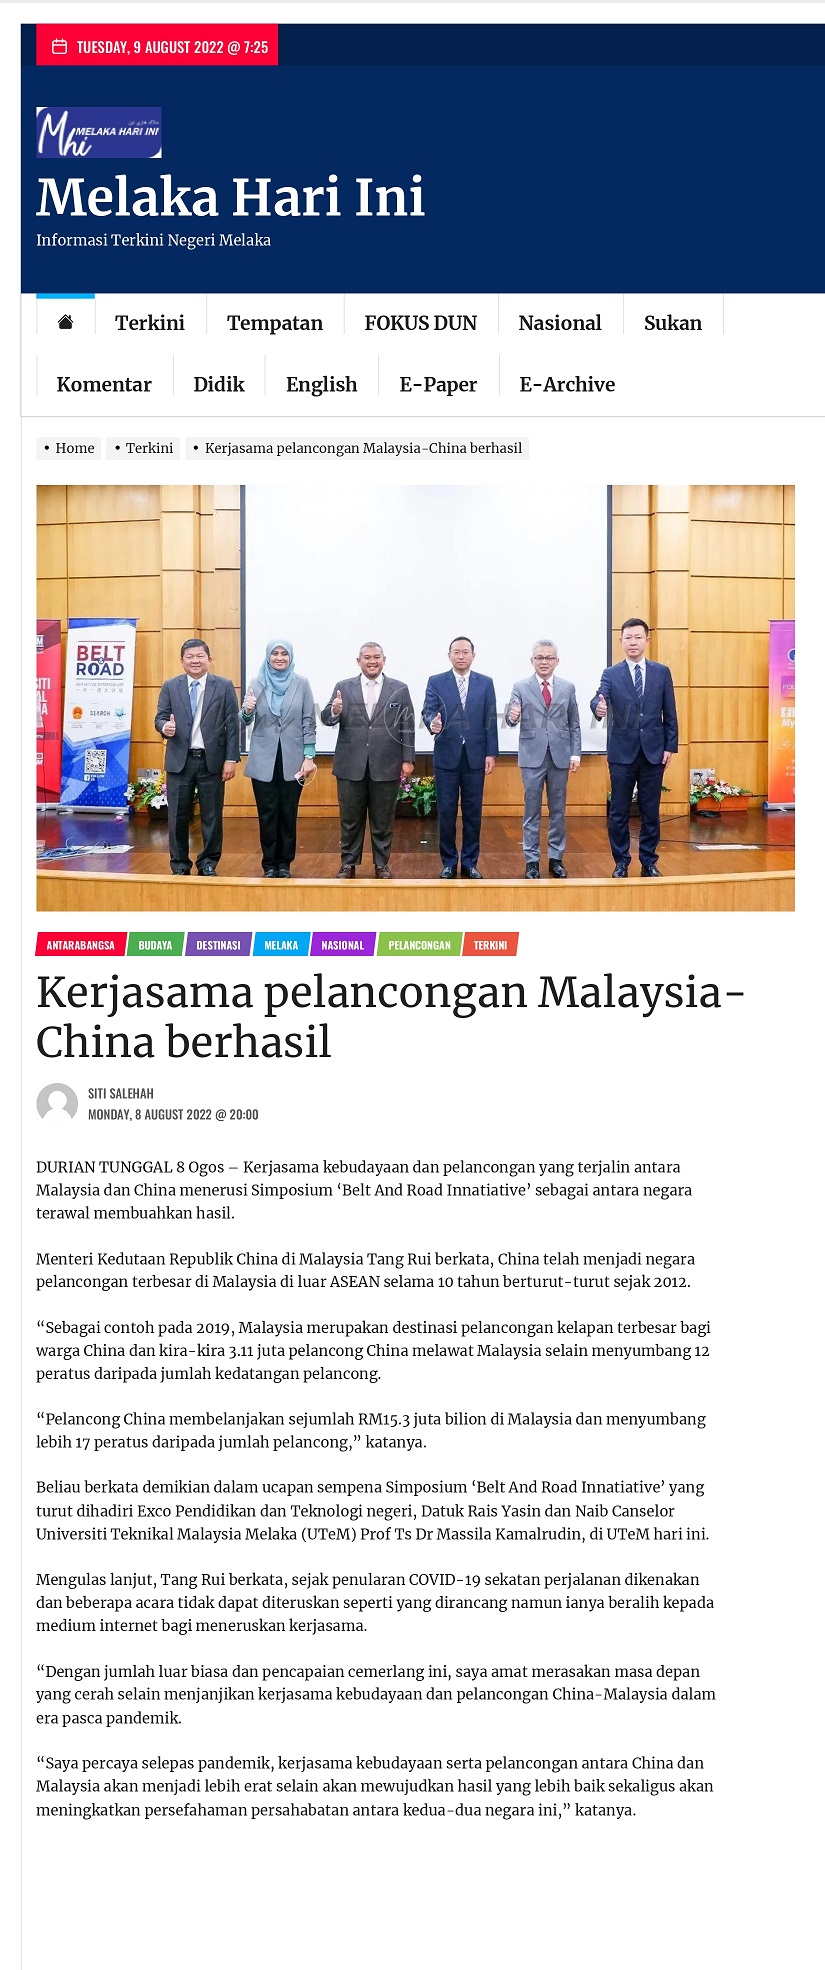 Kerjasama pelancongan Malaysia-China berhasil